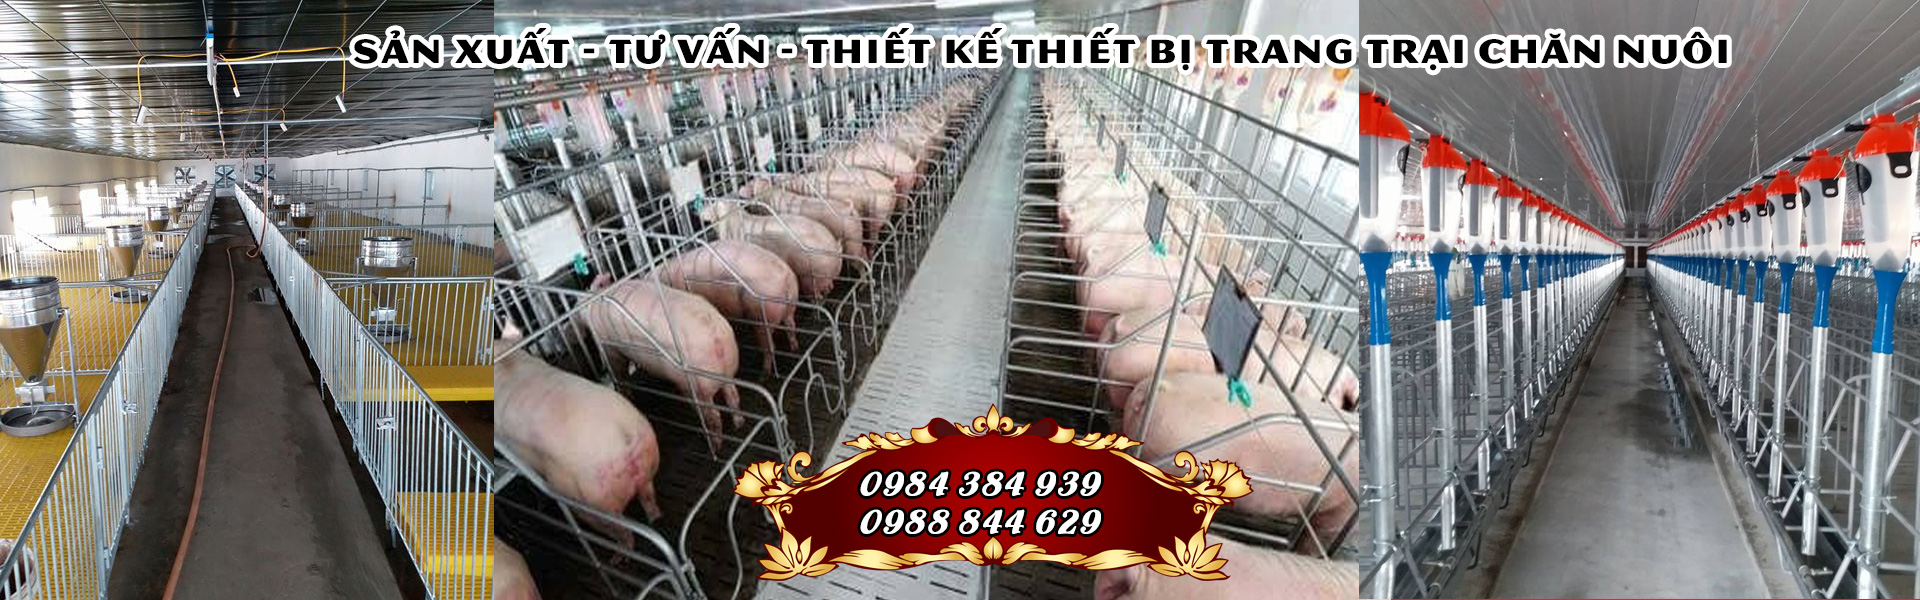 Thiết bị chăn nuôi heo tại Quảng Bình